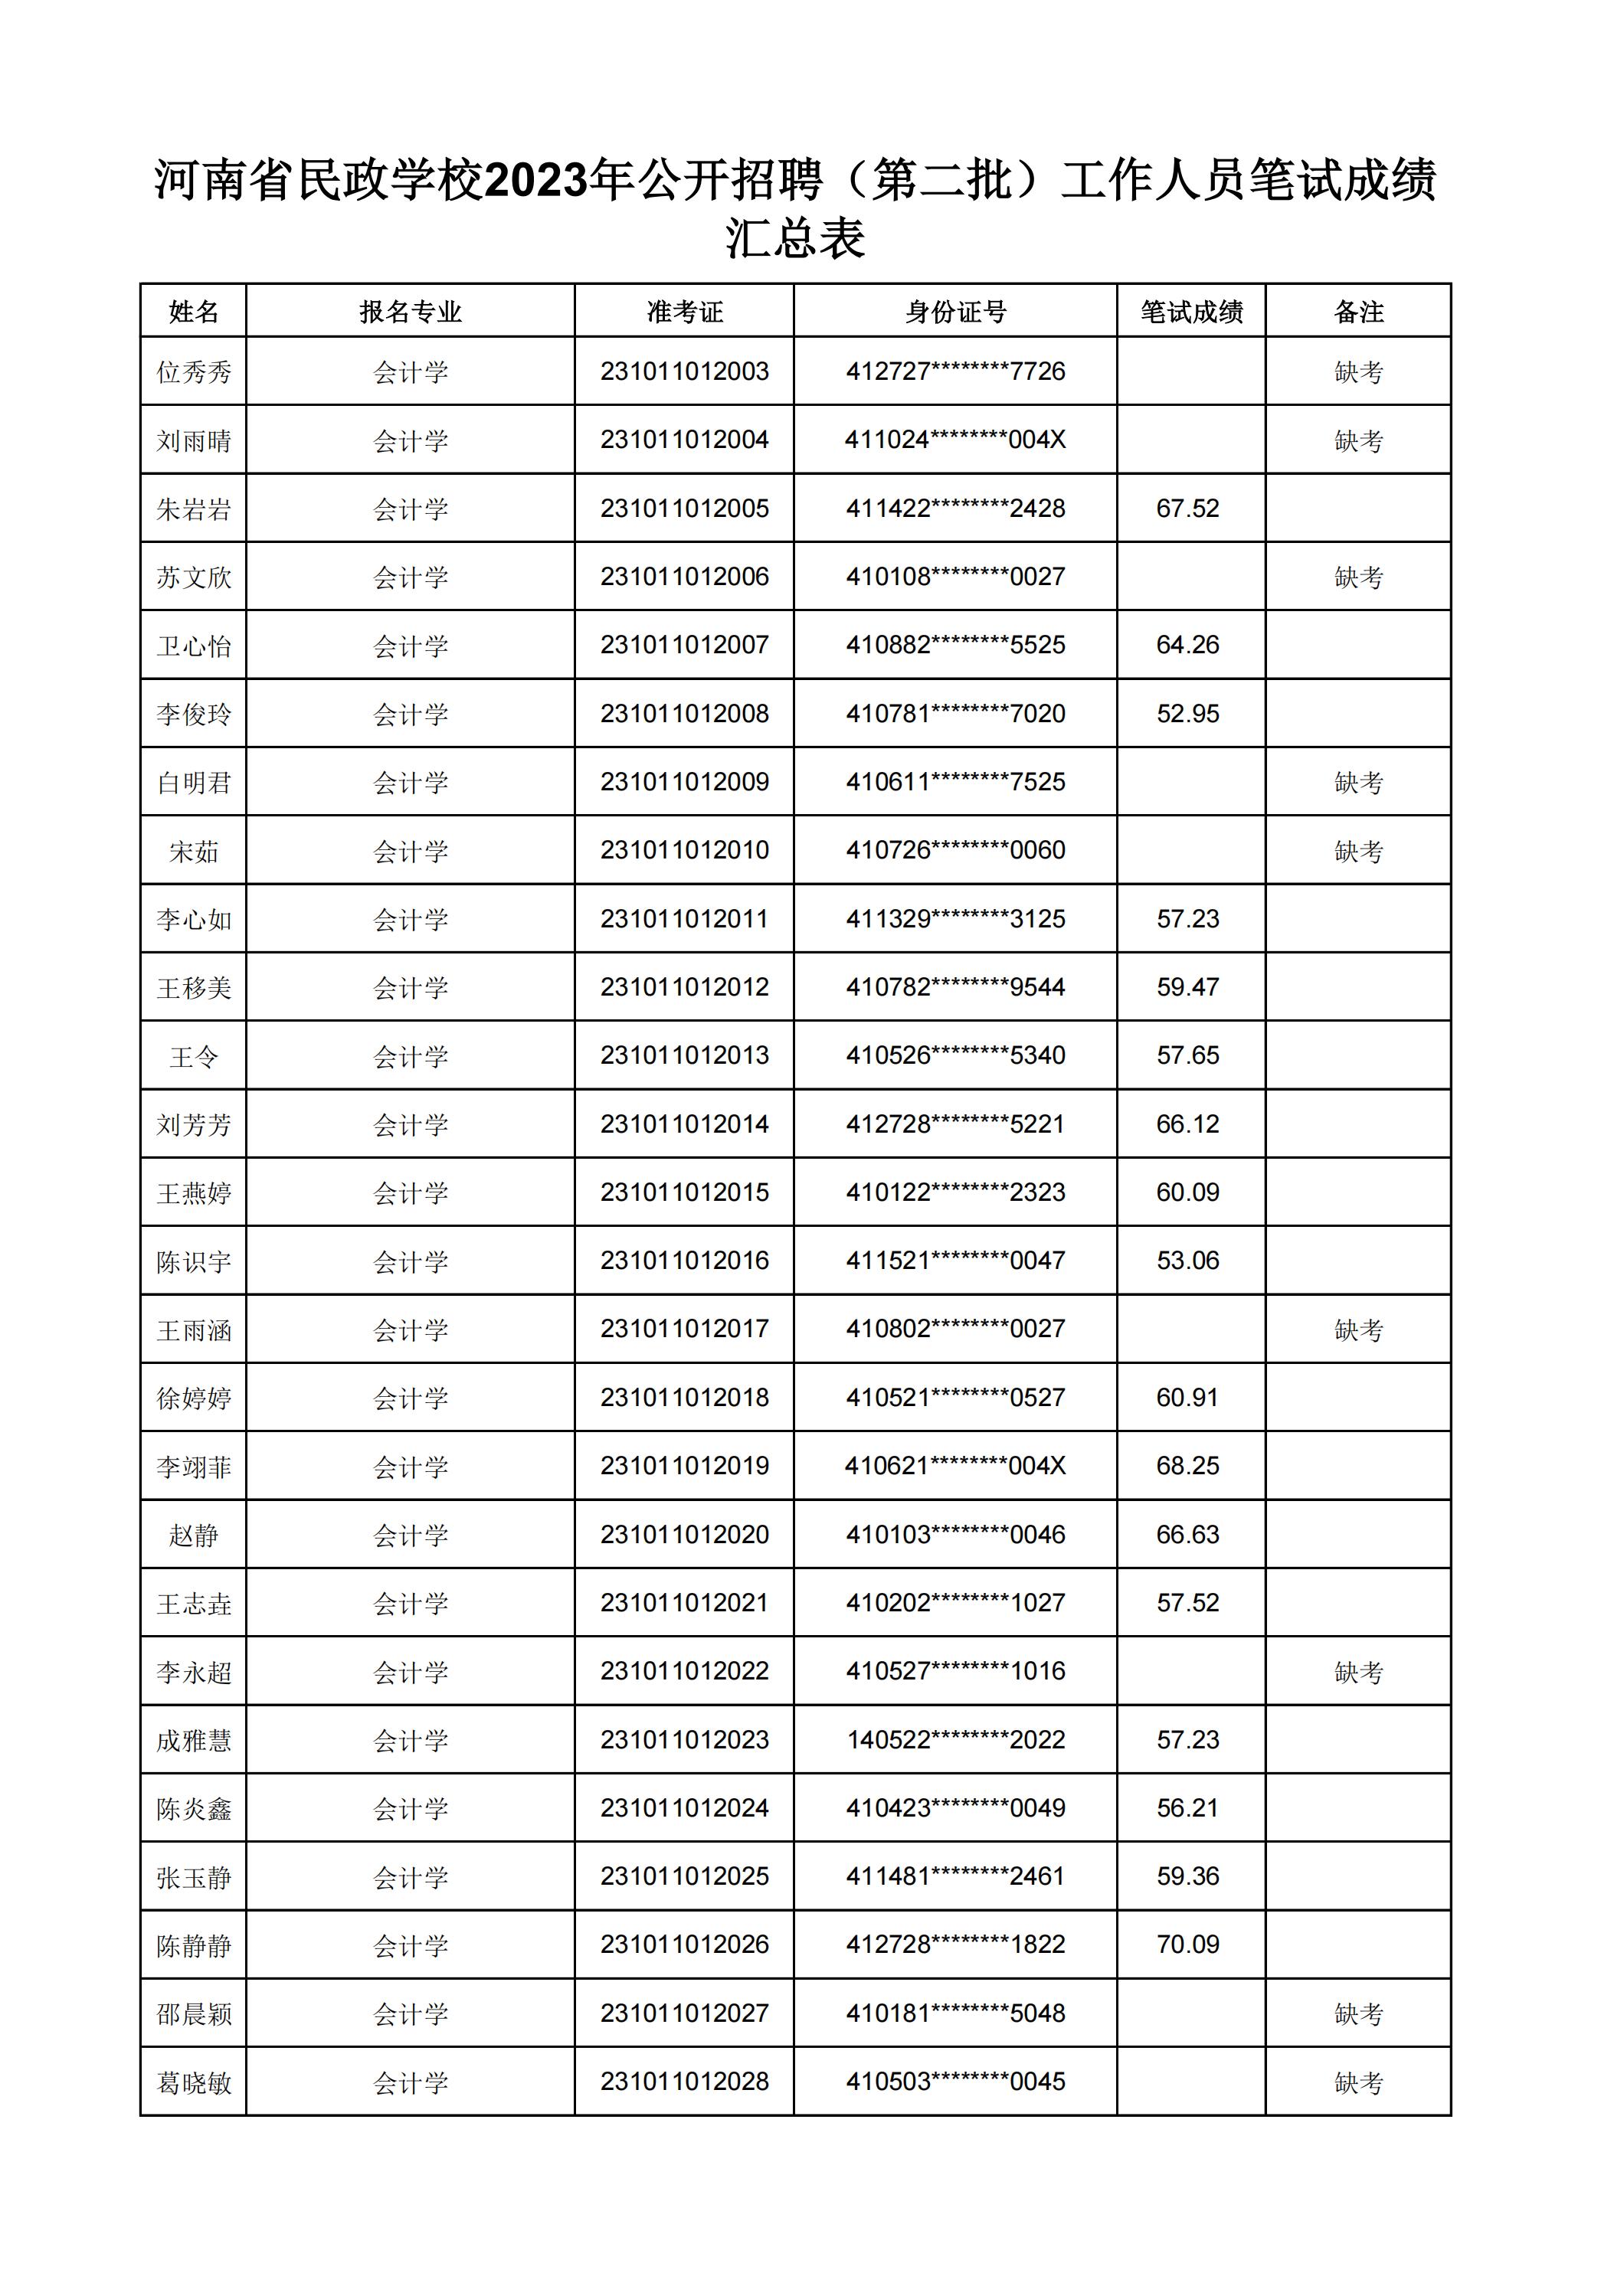 河南省民政学校2023年公开招聘（第二批）工作人员笔试成绩汇总表(2)_22.jpg